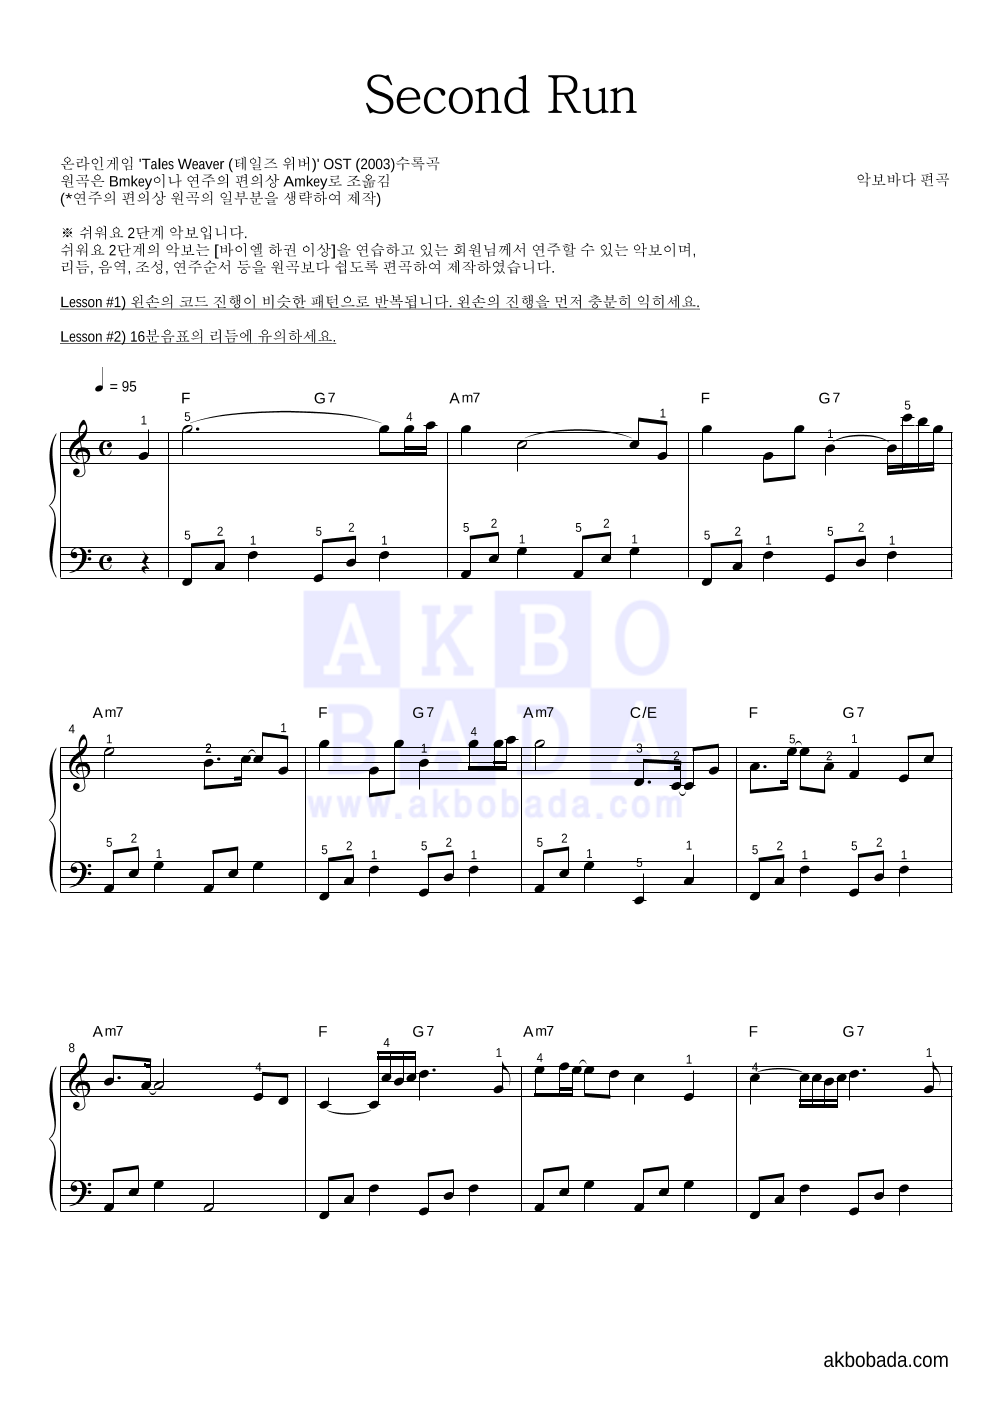 테일즈위버 OST - Second Run 피아노2단-쉬워요 악보 